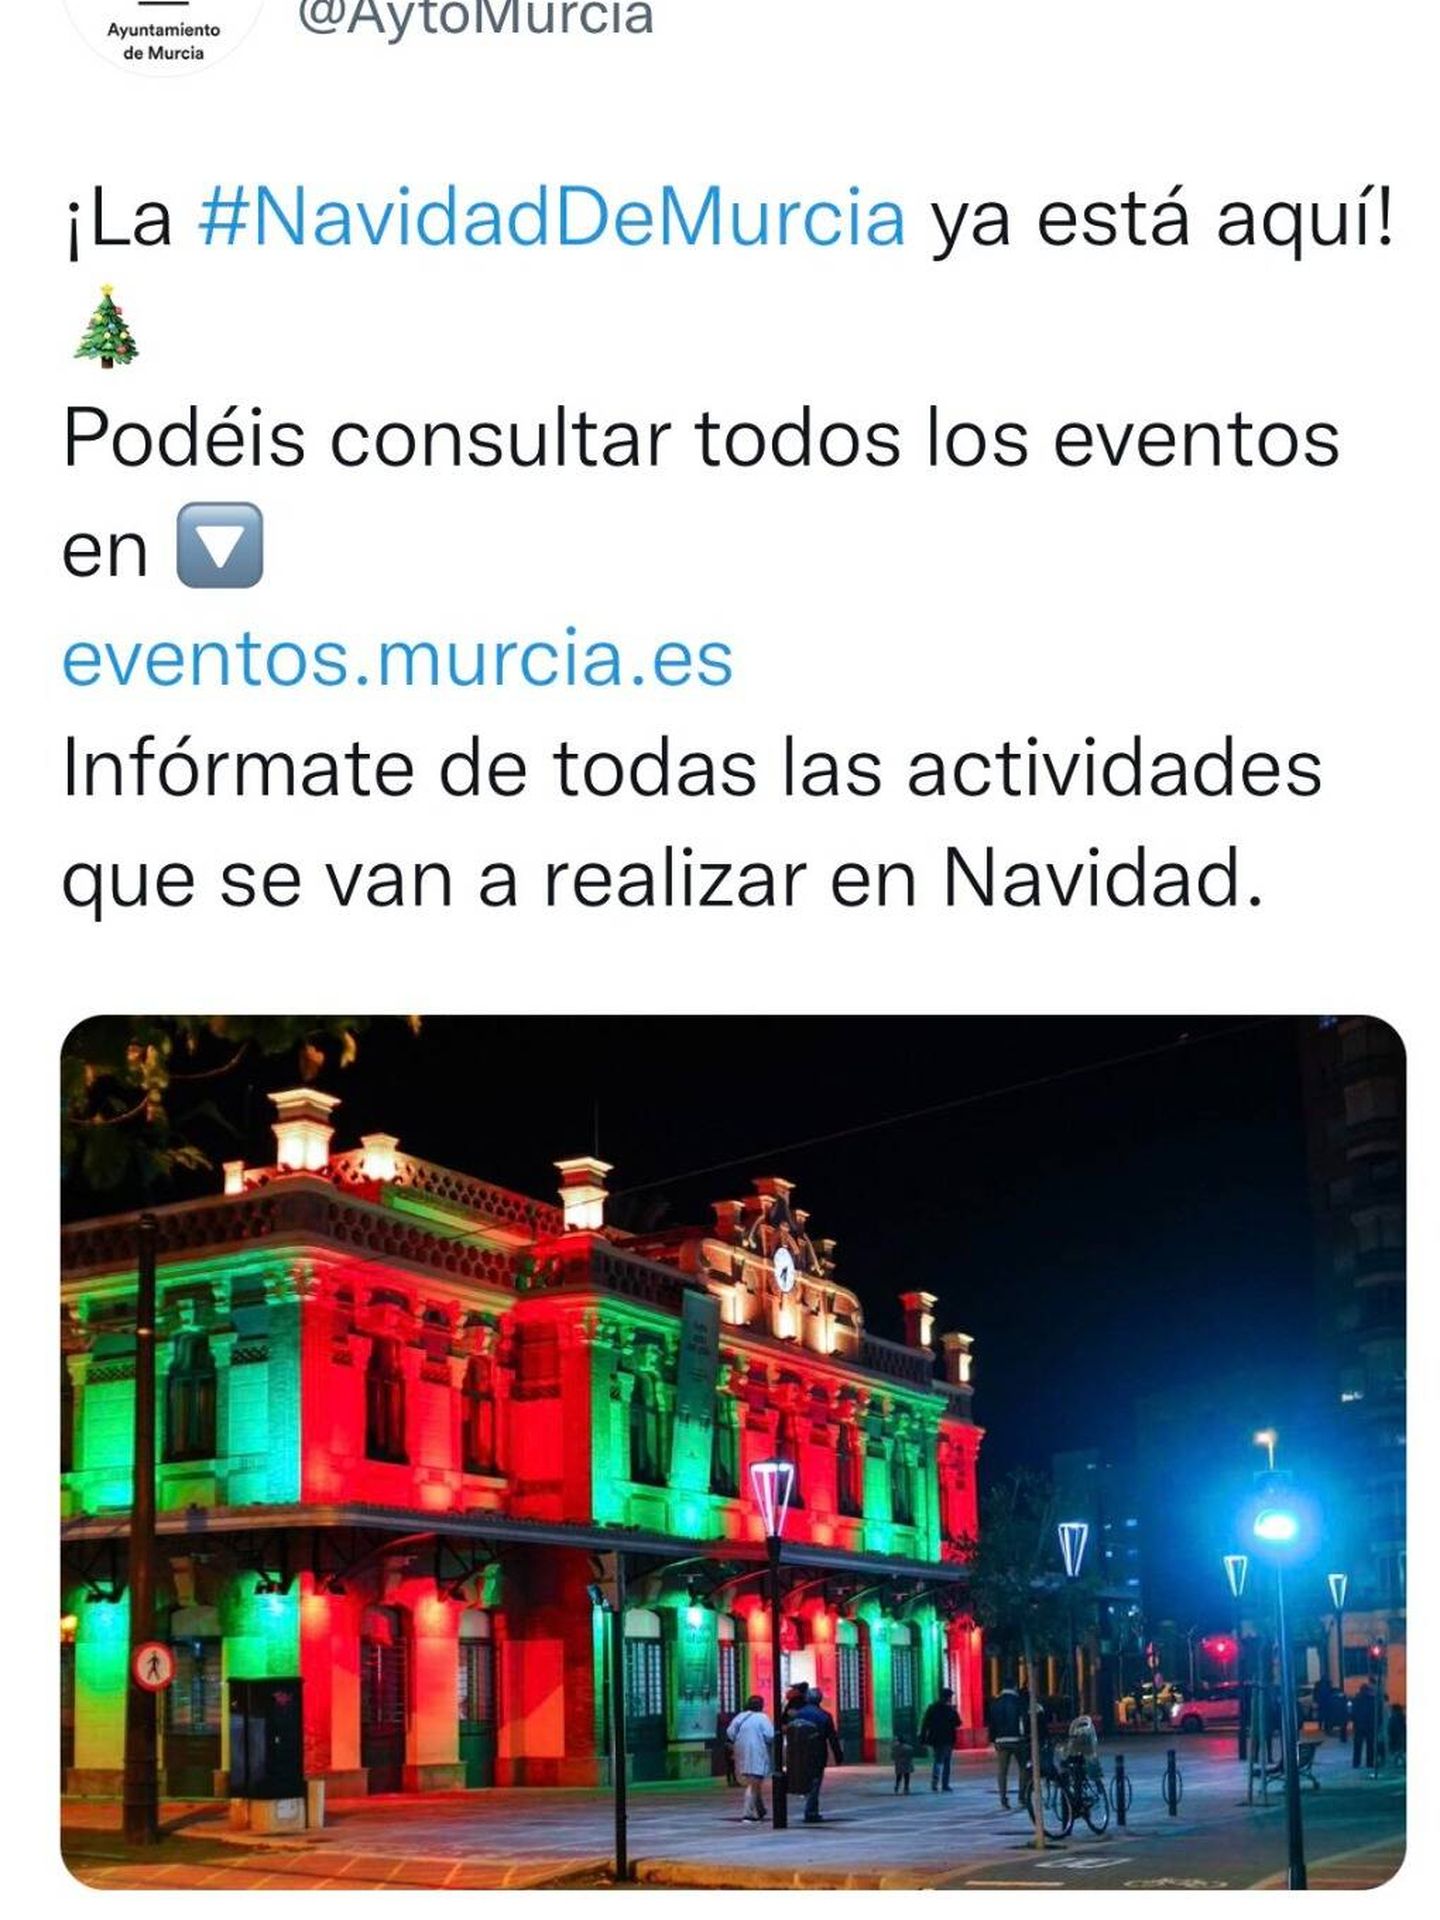 Captura de pantalla de un mensaje en Twitter del año 2019 con las mismas luces que el martes.